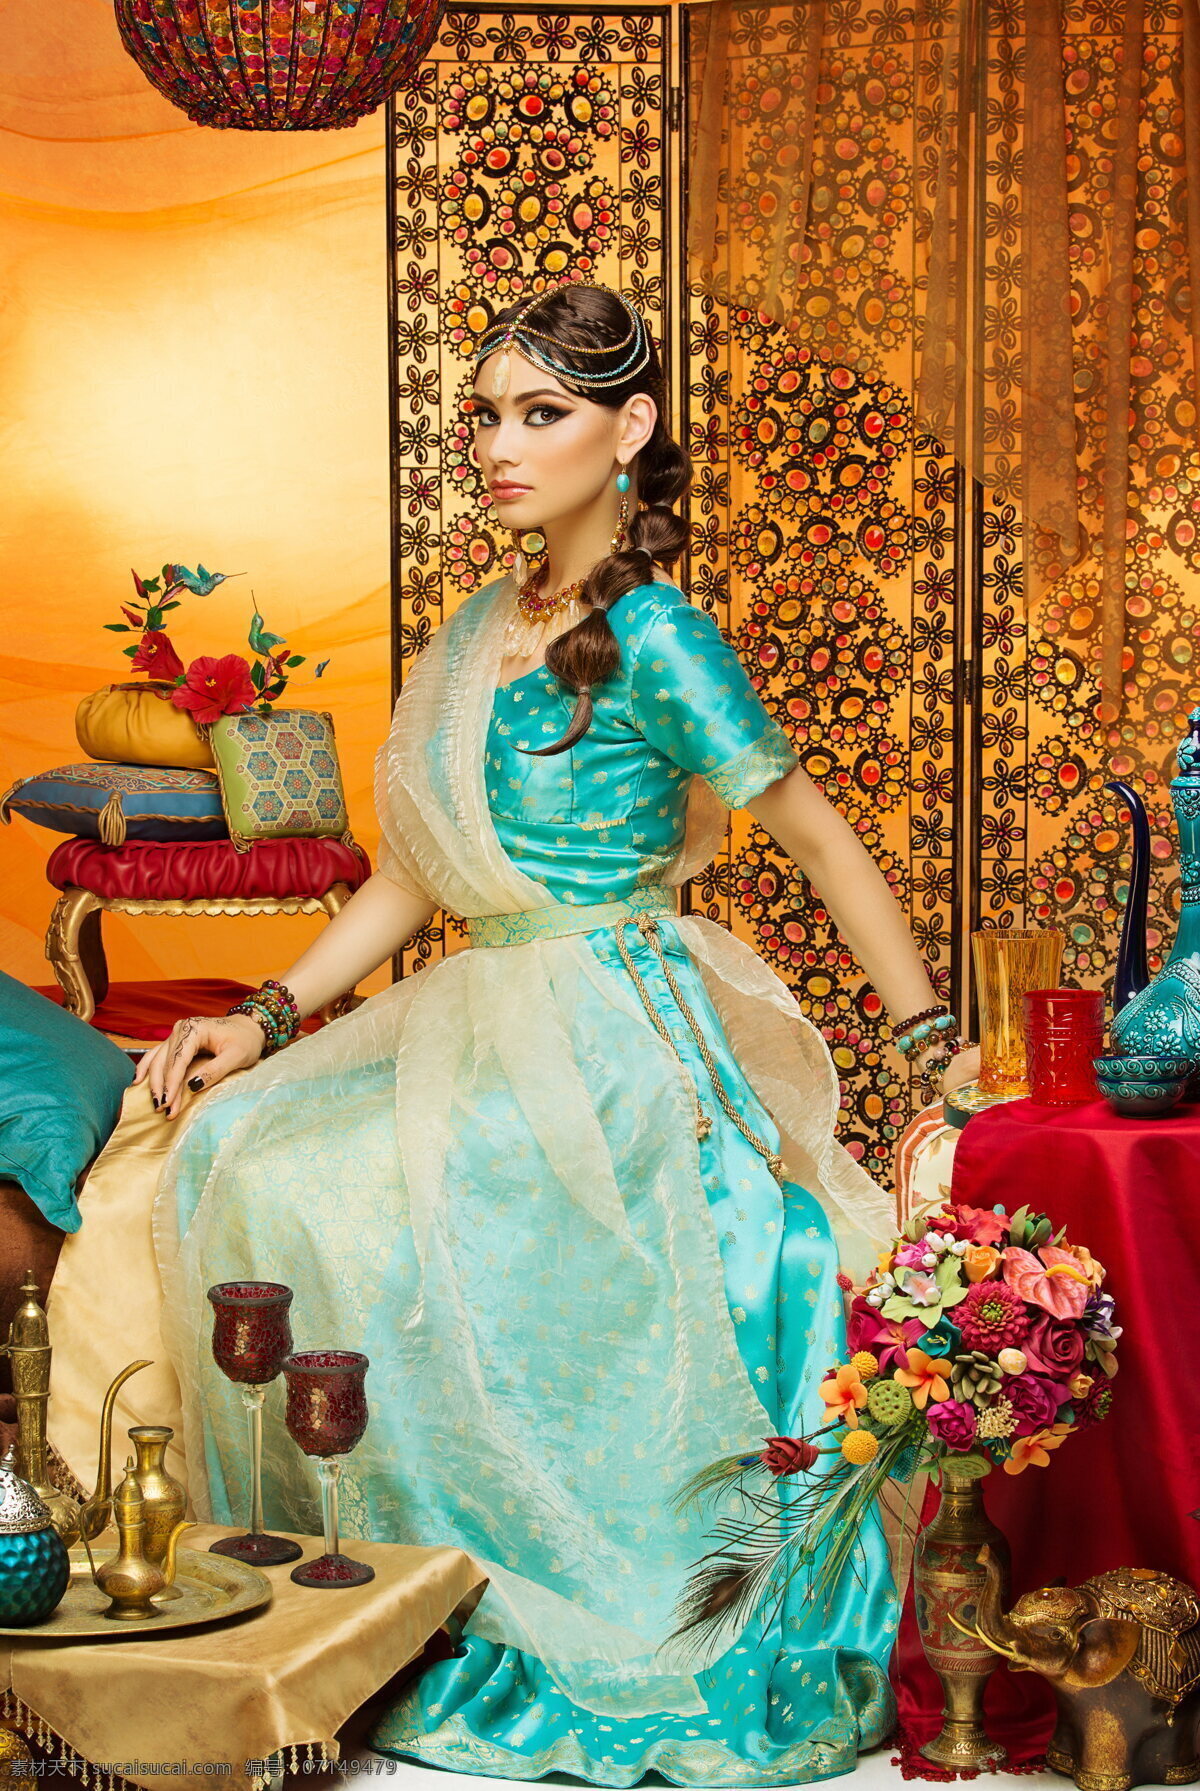 美丽 印度 美女 高清 写真 印度装 美女写真 异国风情